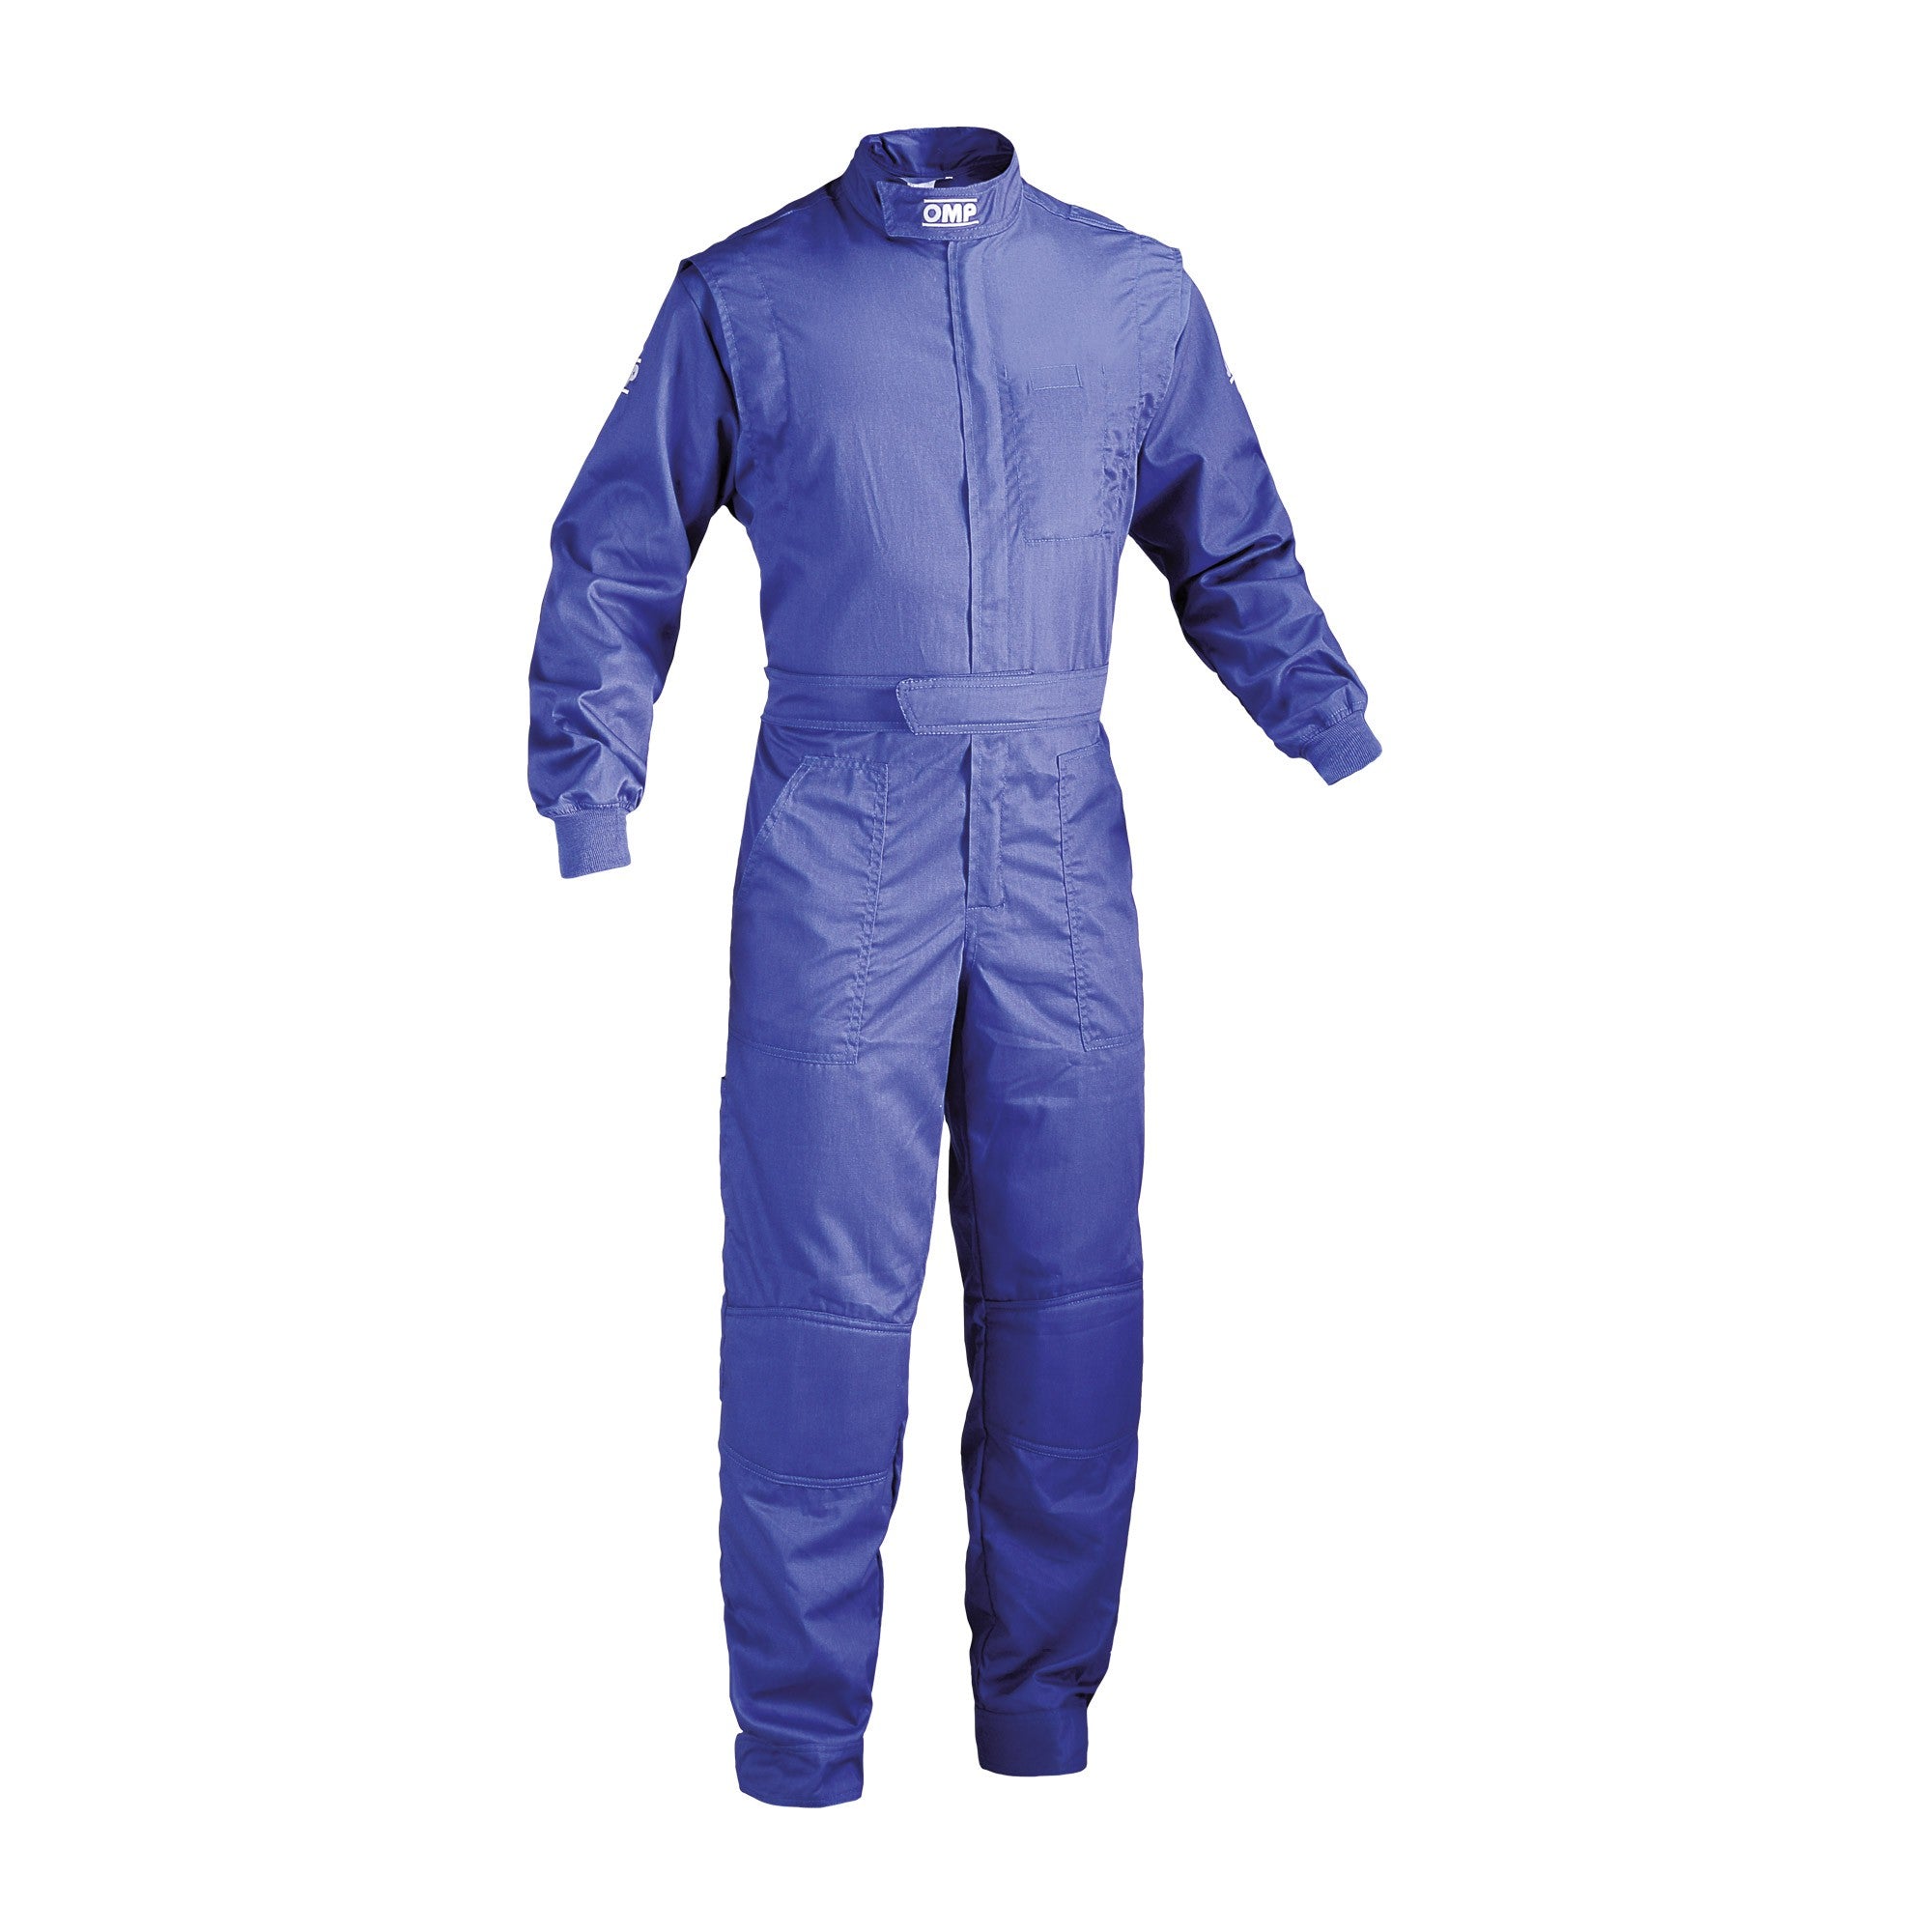 OMP NB0-1579-A01-041-50 (NB157904150) Mechanic suit SUMMER, blue, size 50 Photo-0 